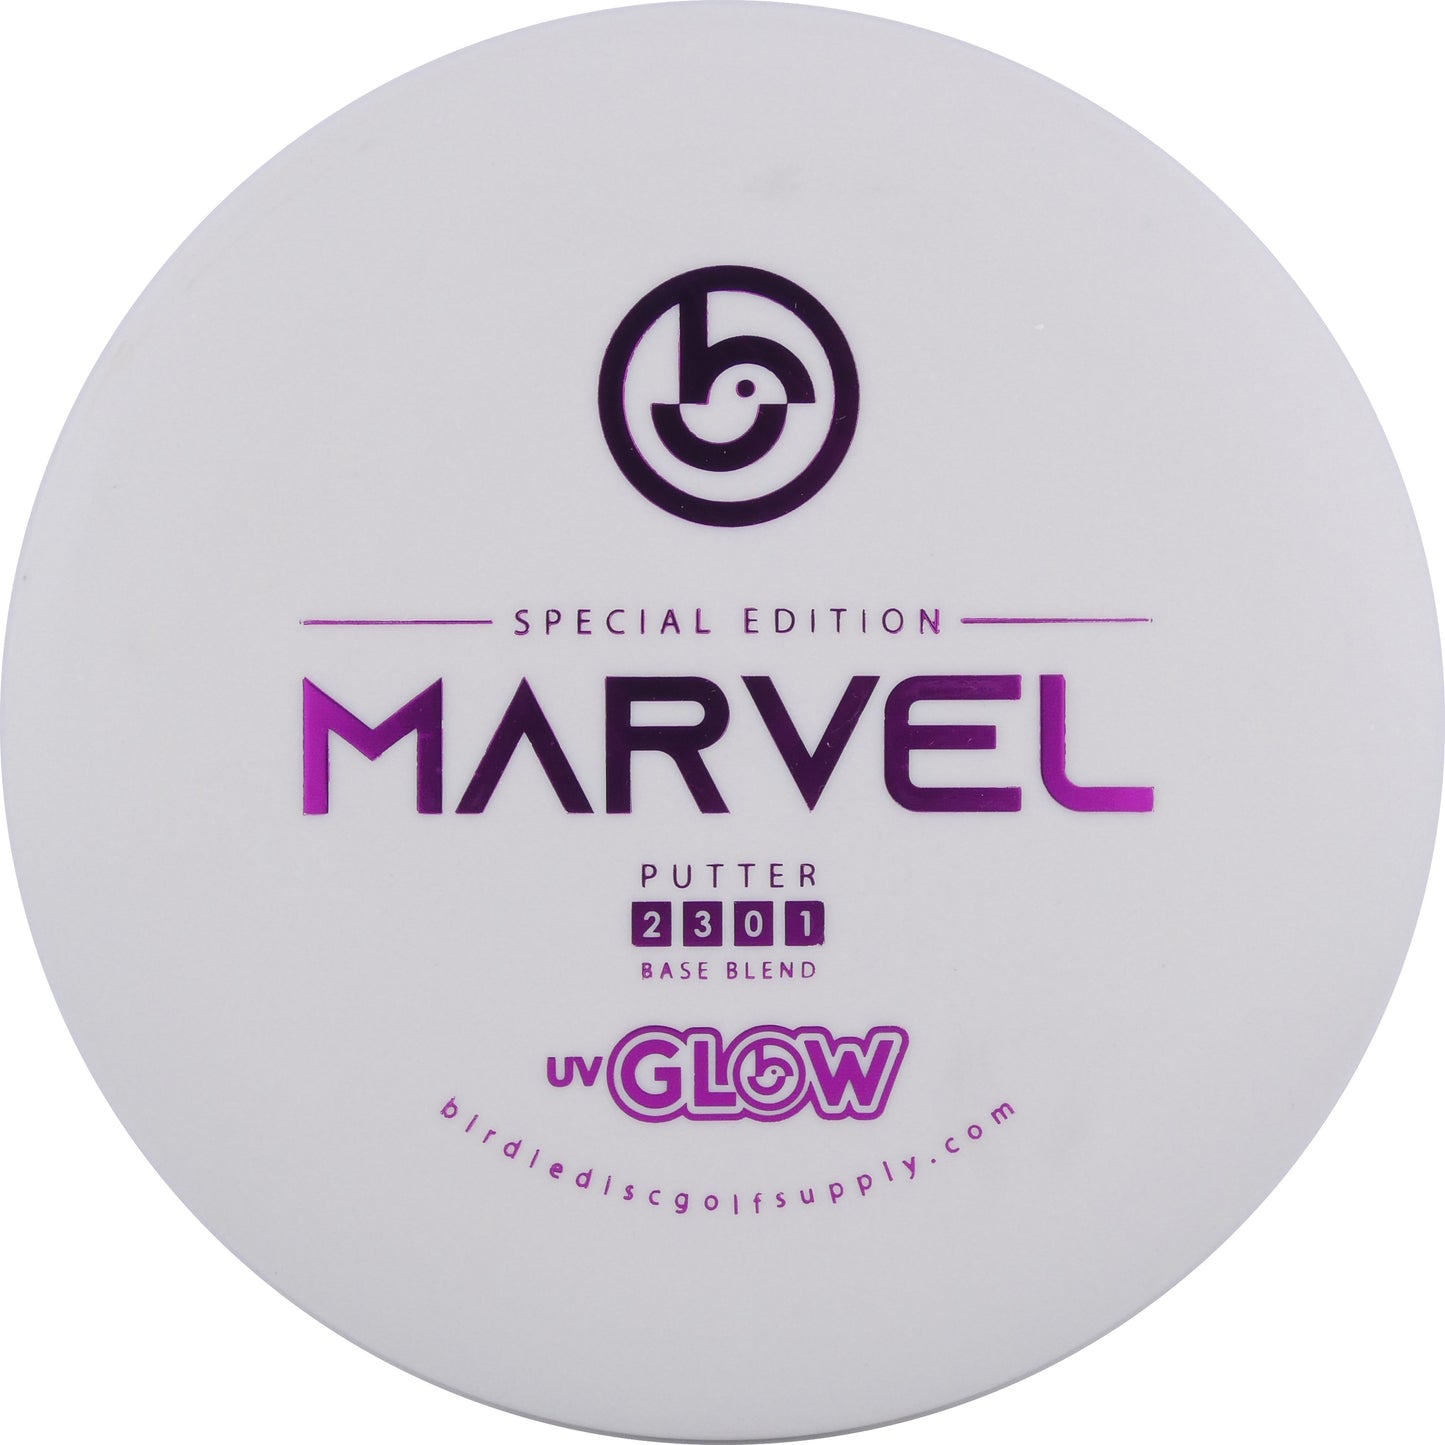 UV Glow Base Blend Marvel 173-175g